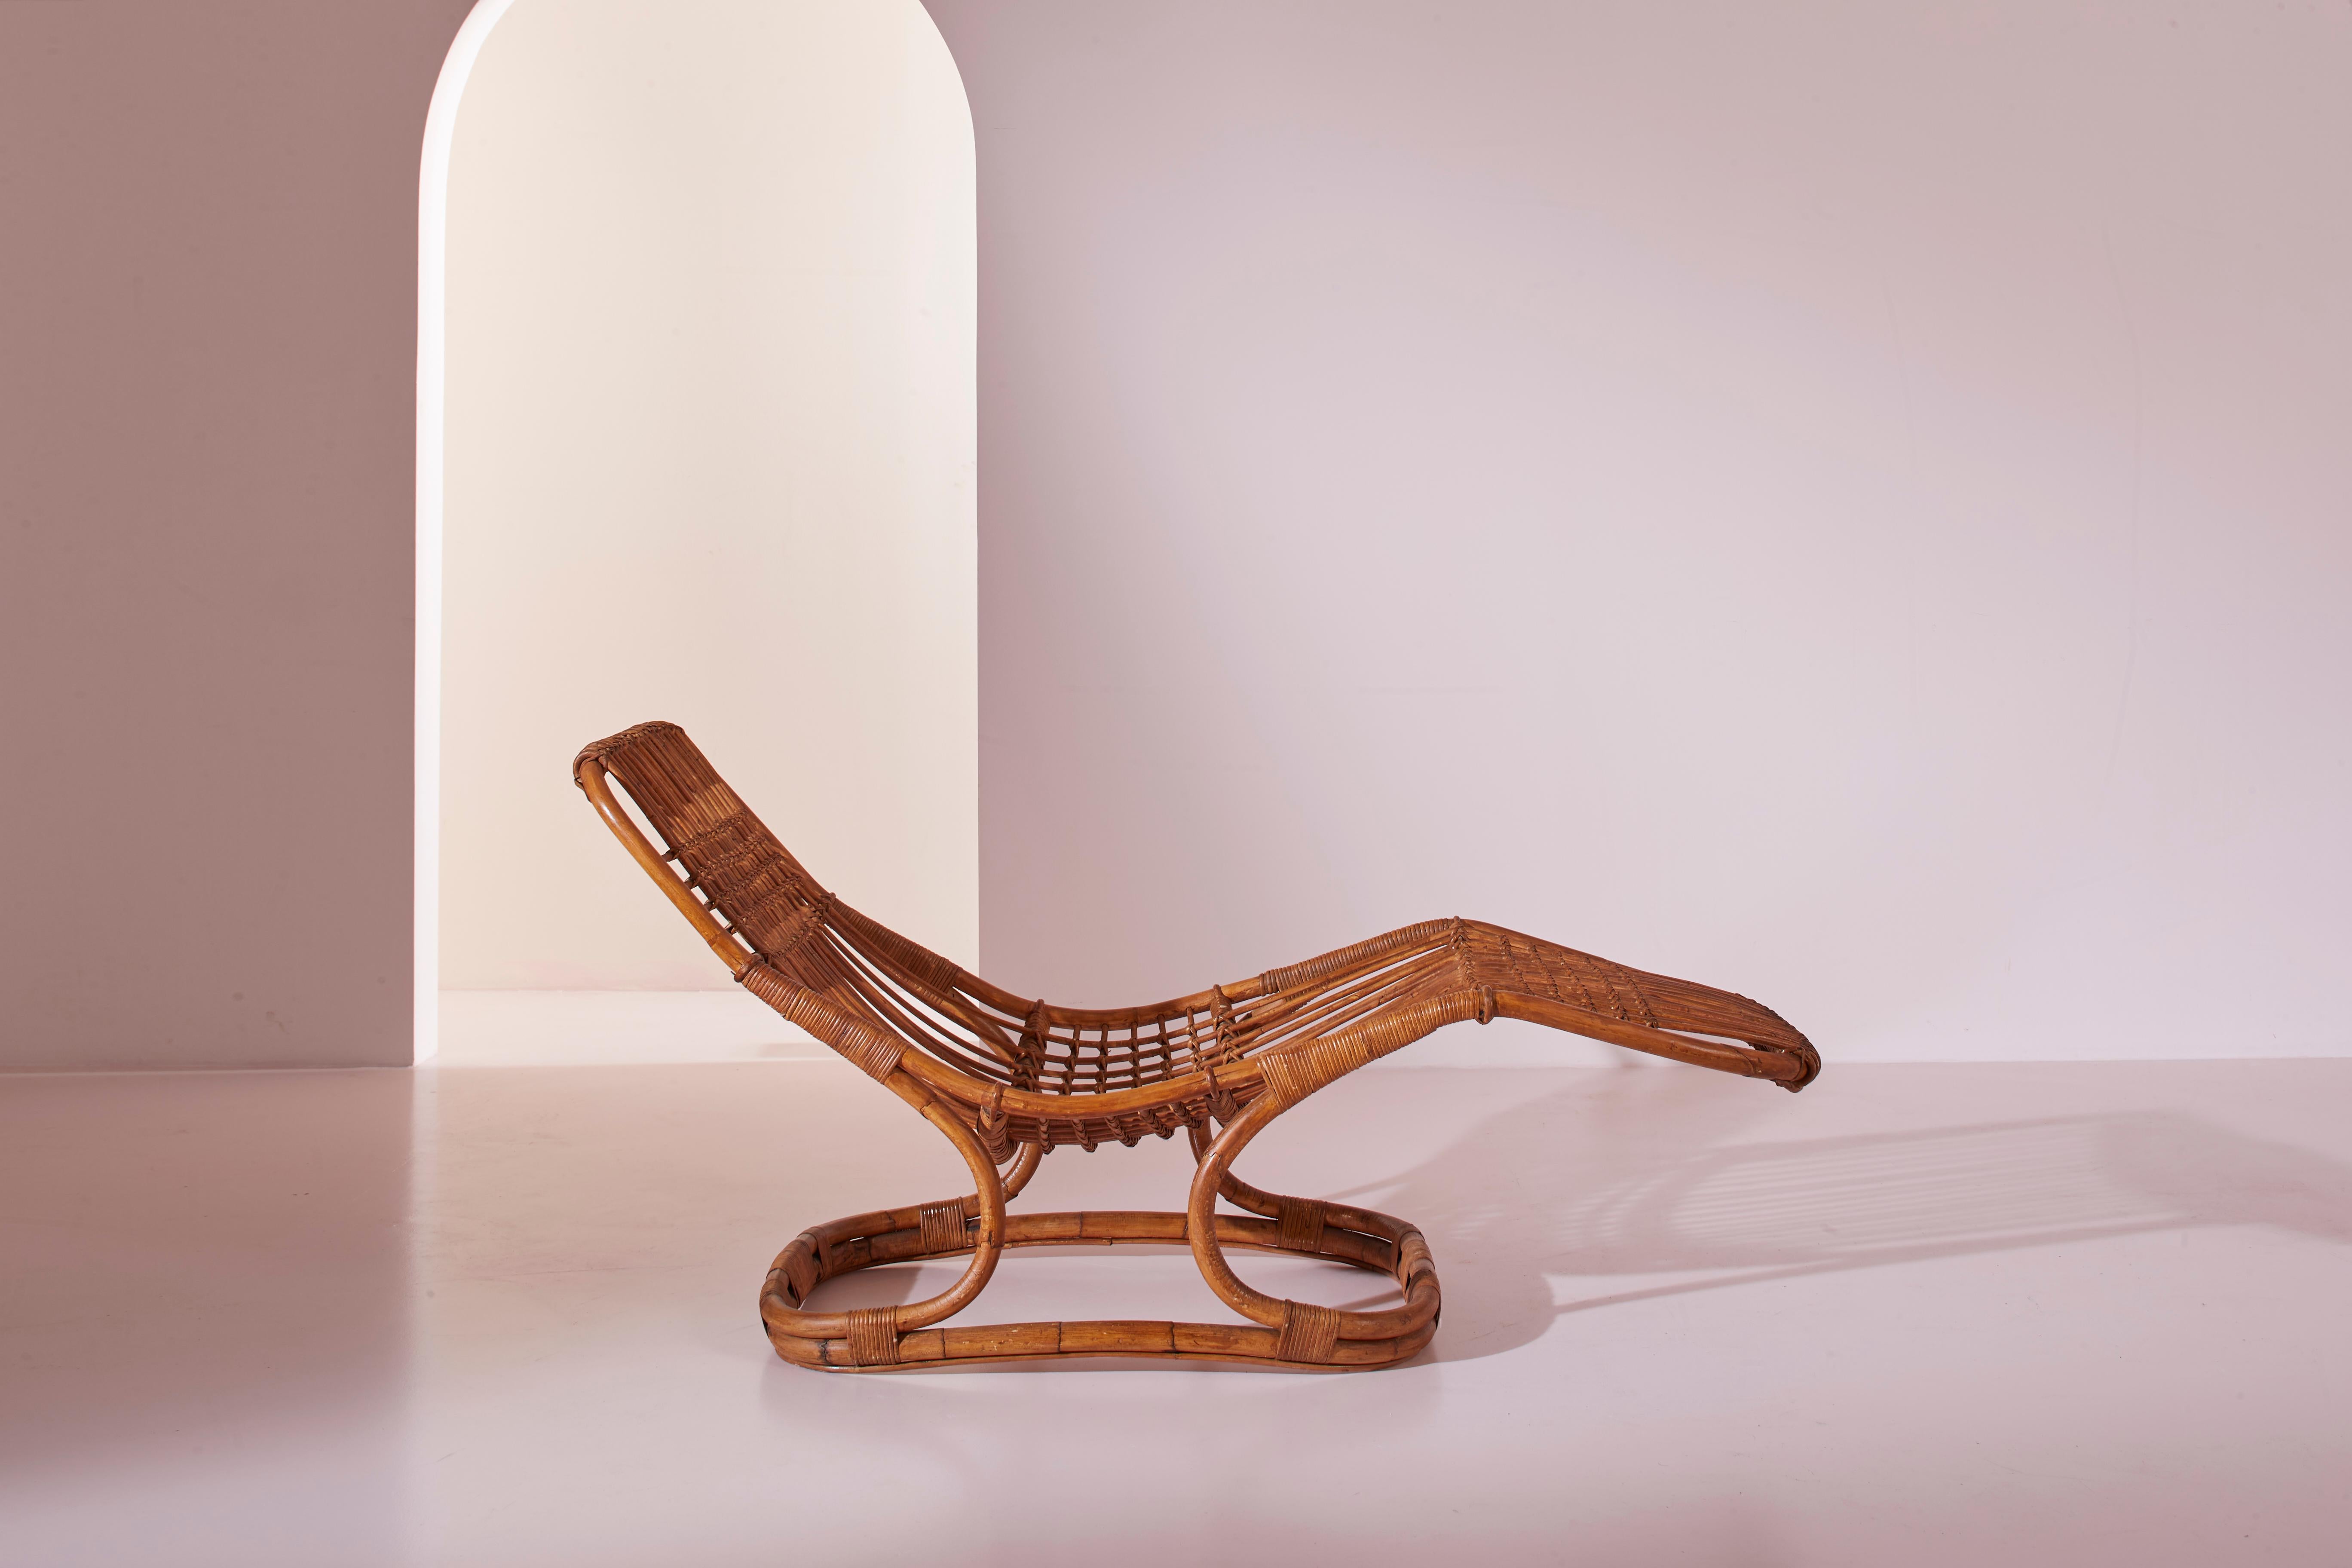 Eine Chaiselongue aus Weide und Rattan, entworfen von Tito Agnoli, hergestellt von Pierantonio Bonacina in den 1960er Jahren

Die Besonderheit dieses Relax-Sitzes liegt in der bemerkenswerten Plastizität des verwendeten Naturmaterials, das der